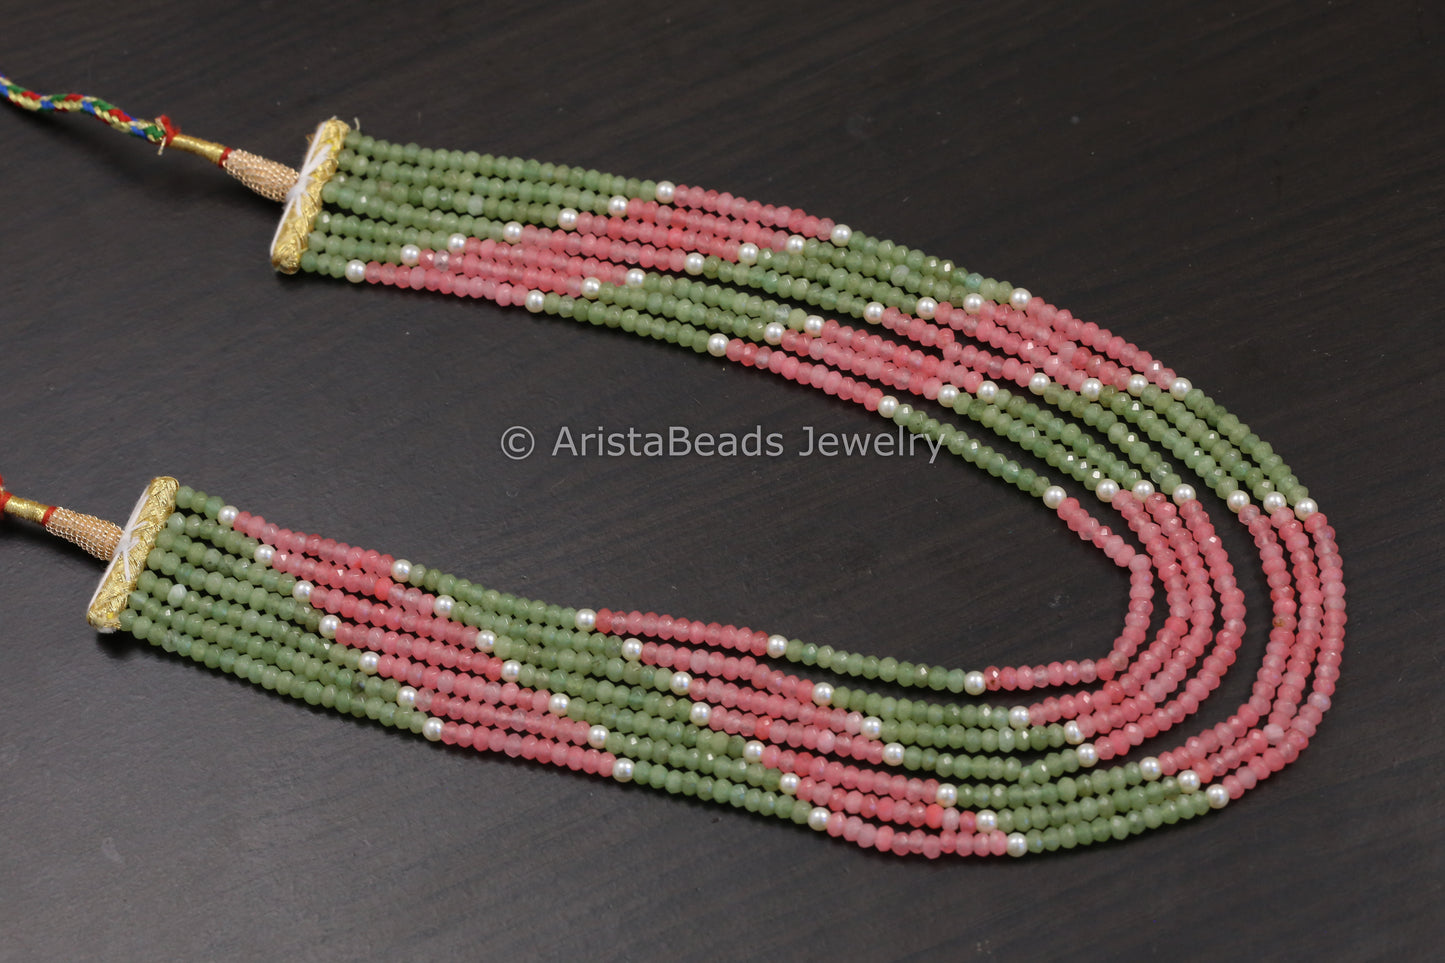 7 Strand Semiprecious Beads Necklace - Color 1